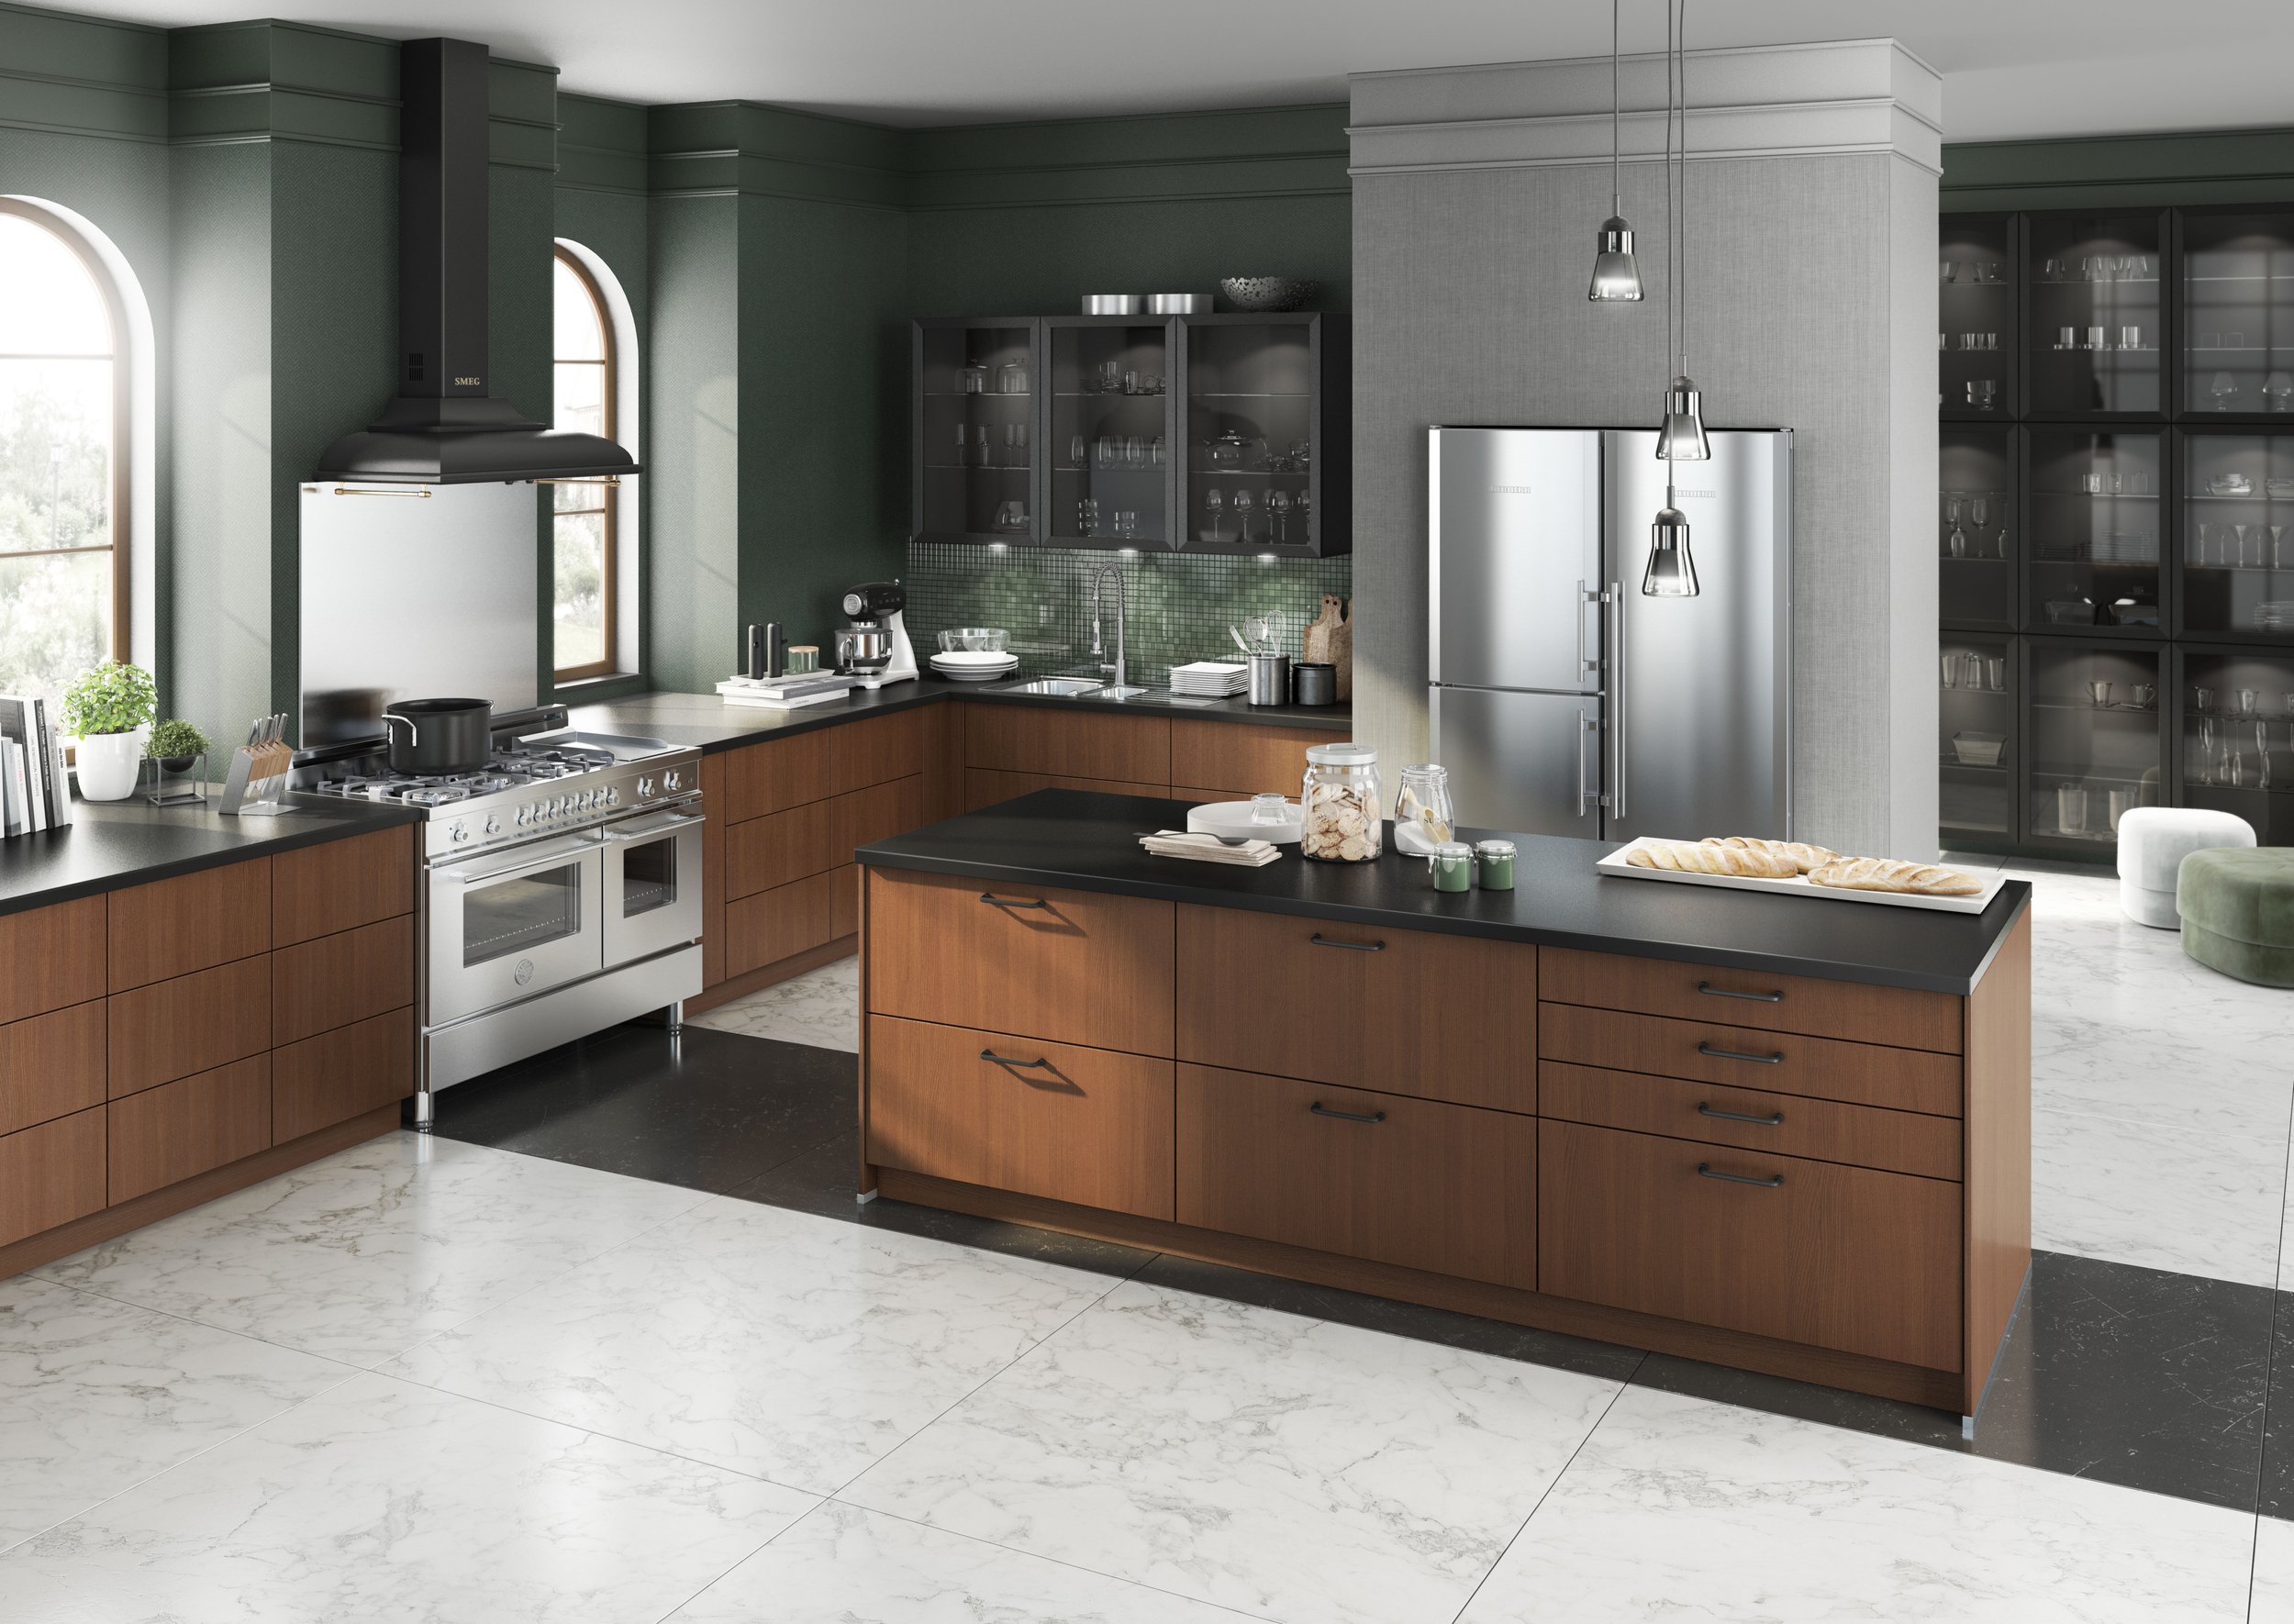  Kitchen Cabinet Showroom - Bauformat Seattle -  Luxury Kitchens